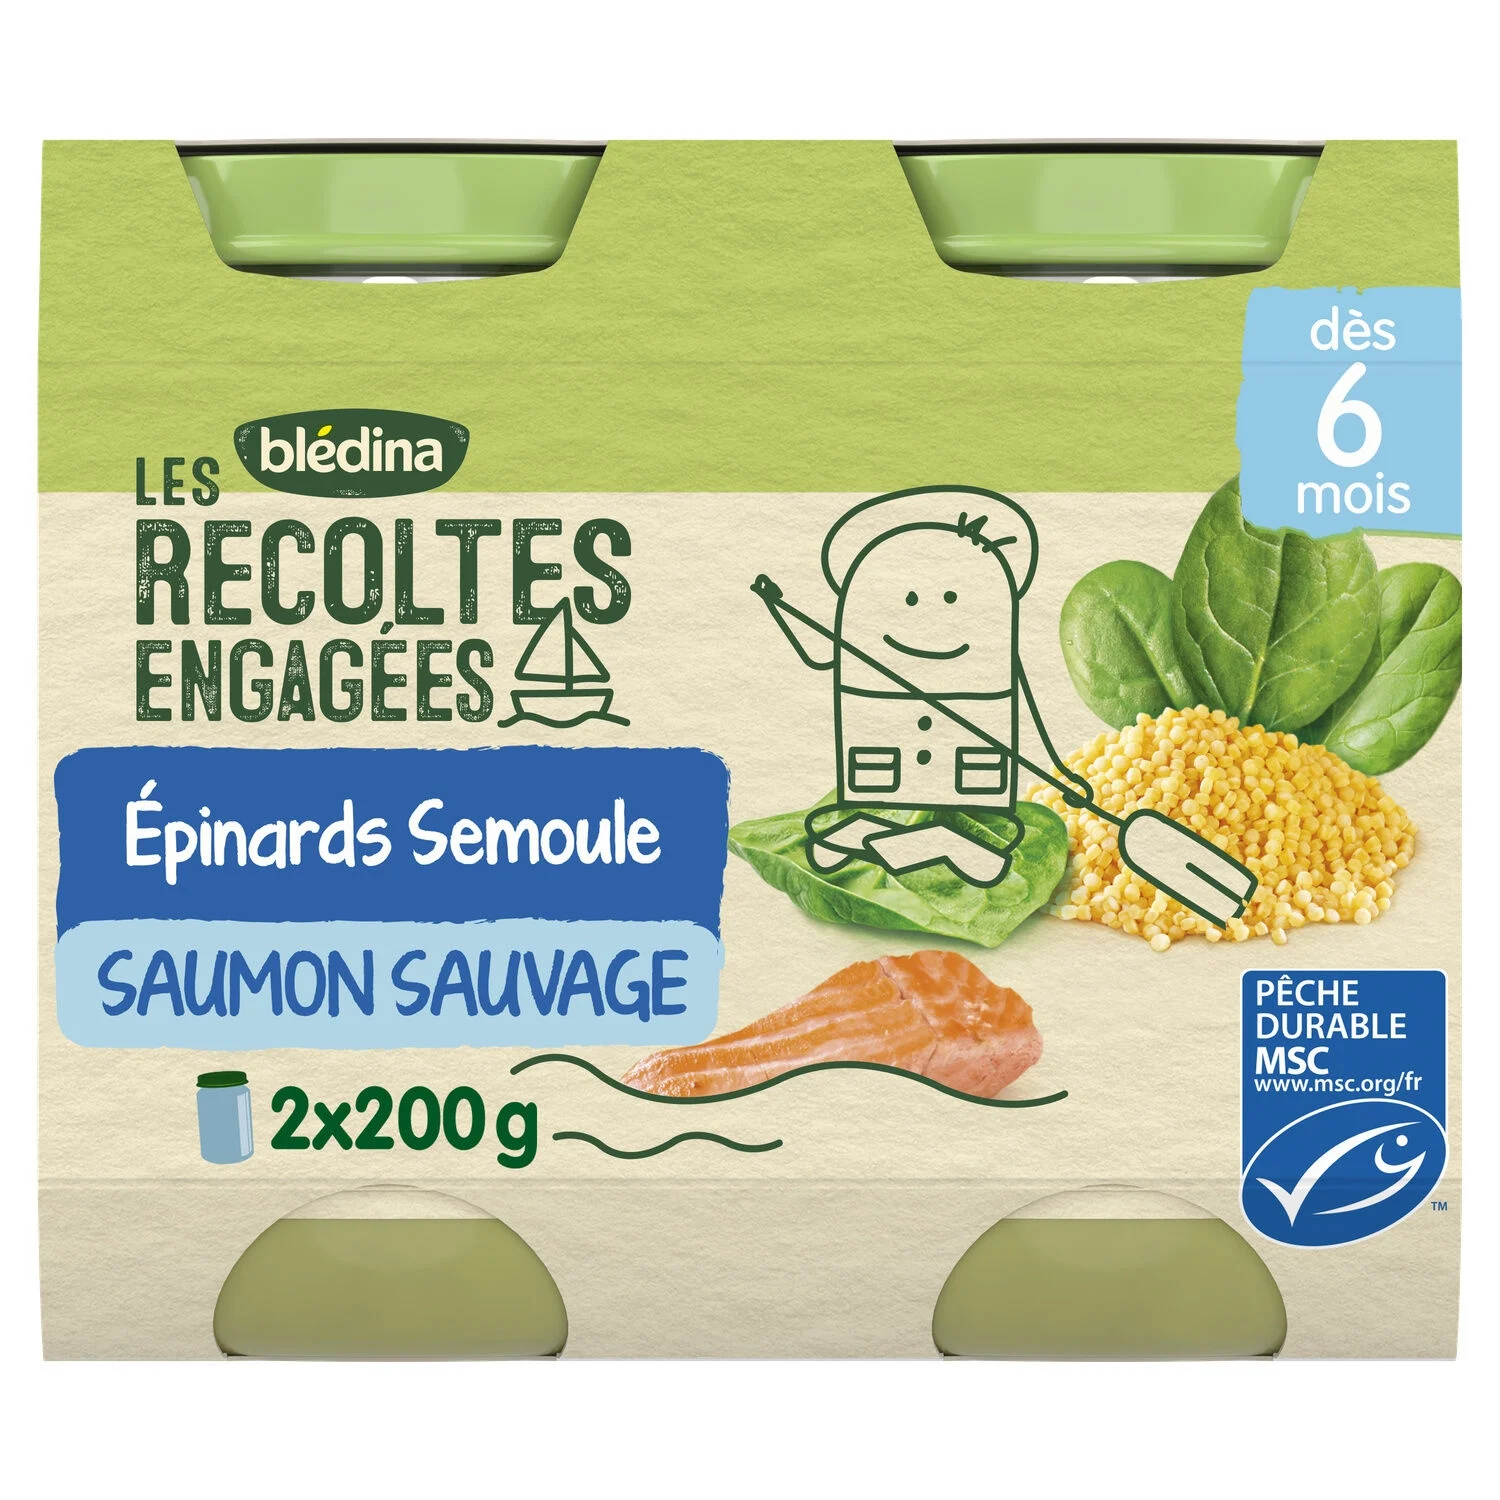 Petit pot bébé dès 6 mois épinards semoule saumon Les Récoltes Engagées 2x200g - BLEDINA